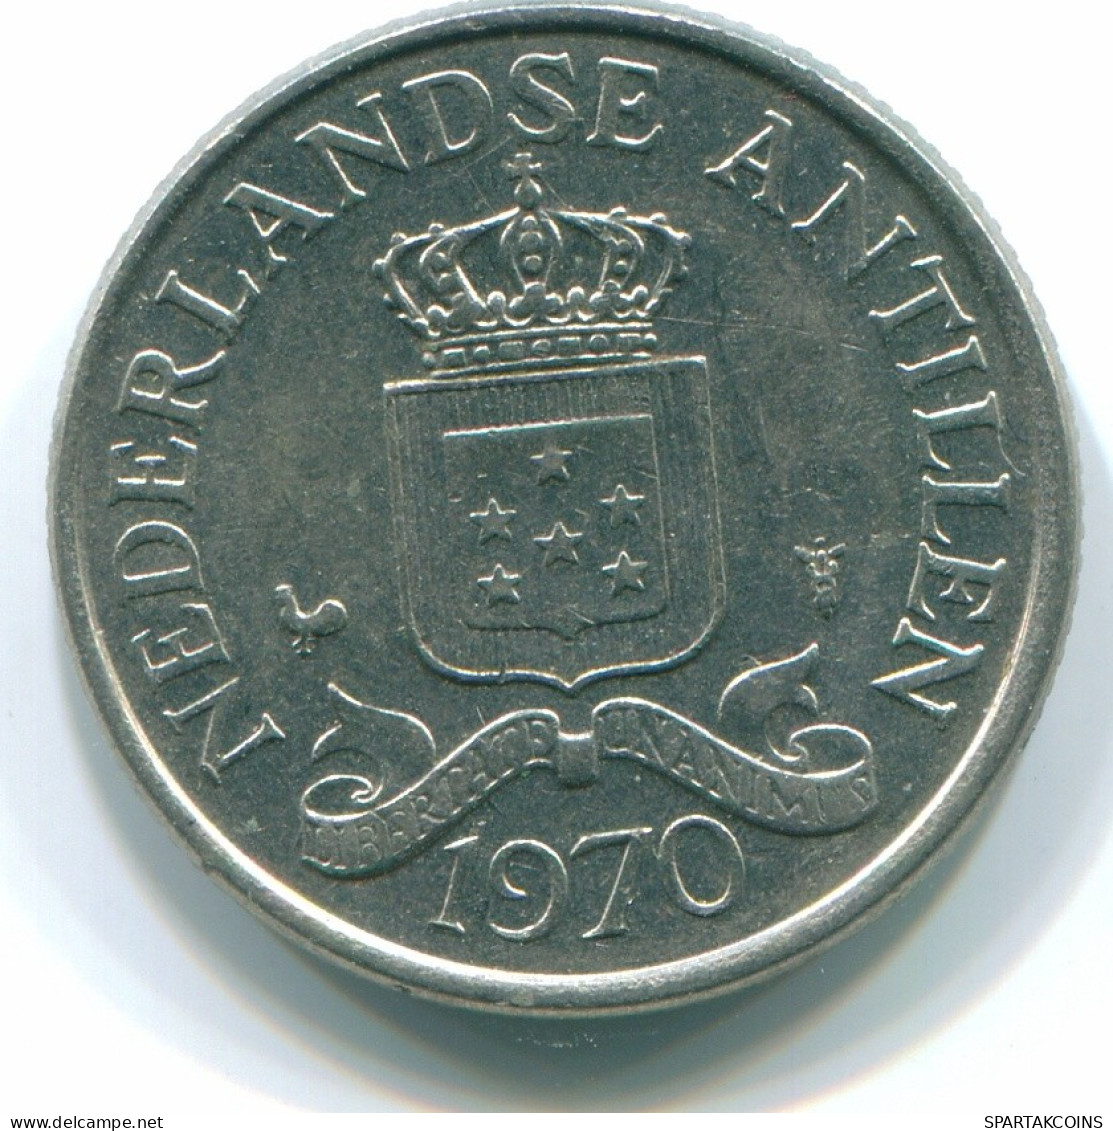 25 CENTS 1970 NETHERLANDS ANTILLES Nickel Colonial Coin #S11438.U.A - Niederländische Antillen